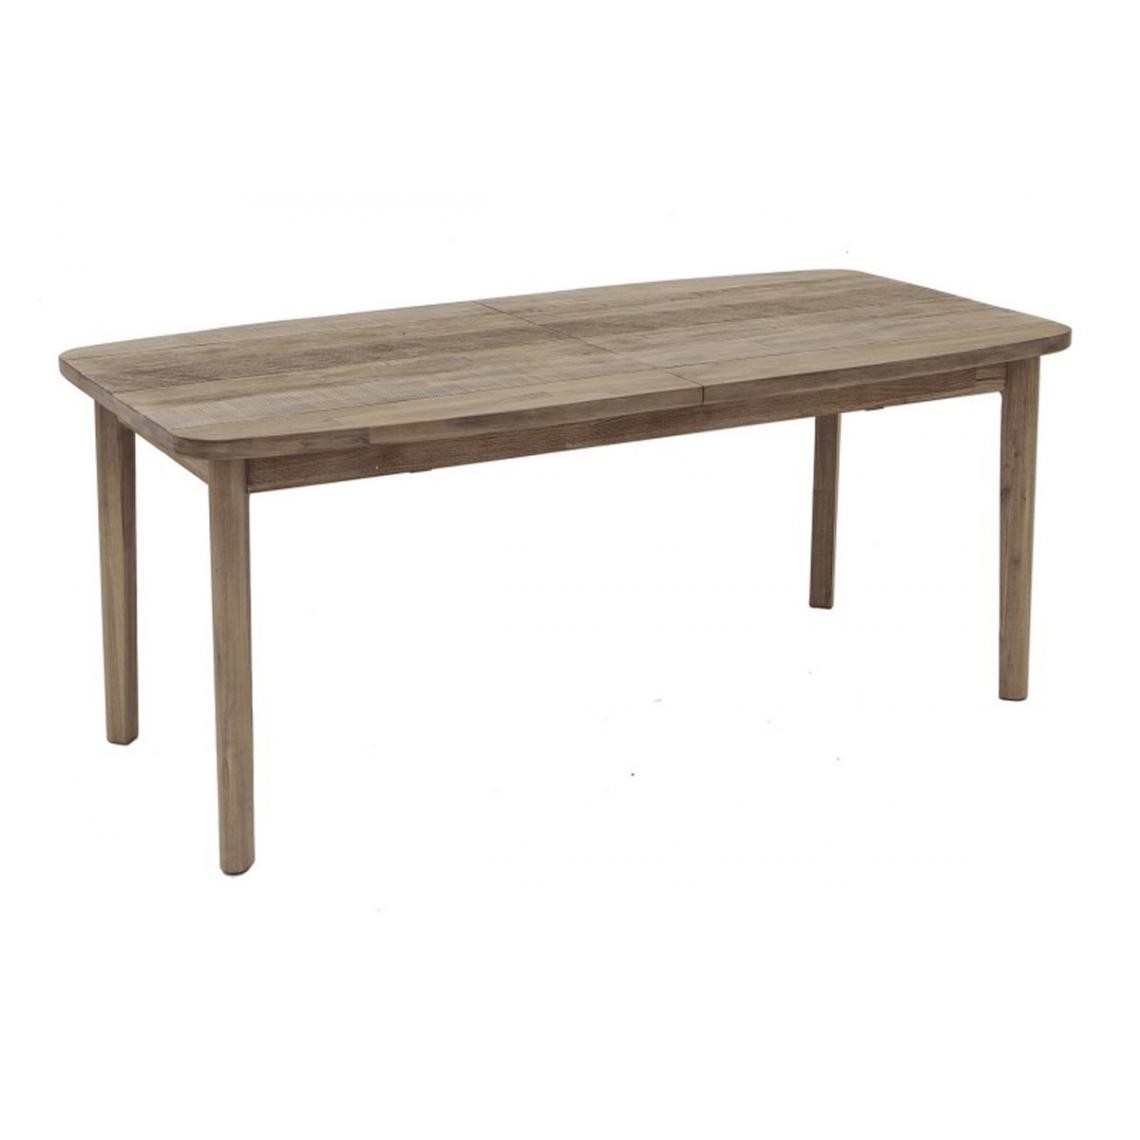 Pegane - Table à manger extensible en bois coloris naturel - L. 180/260 x l. 90 x H. 76 cm - Tables à manger